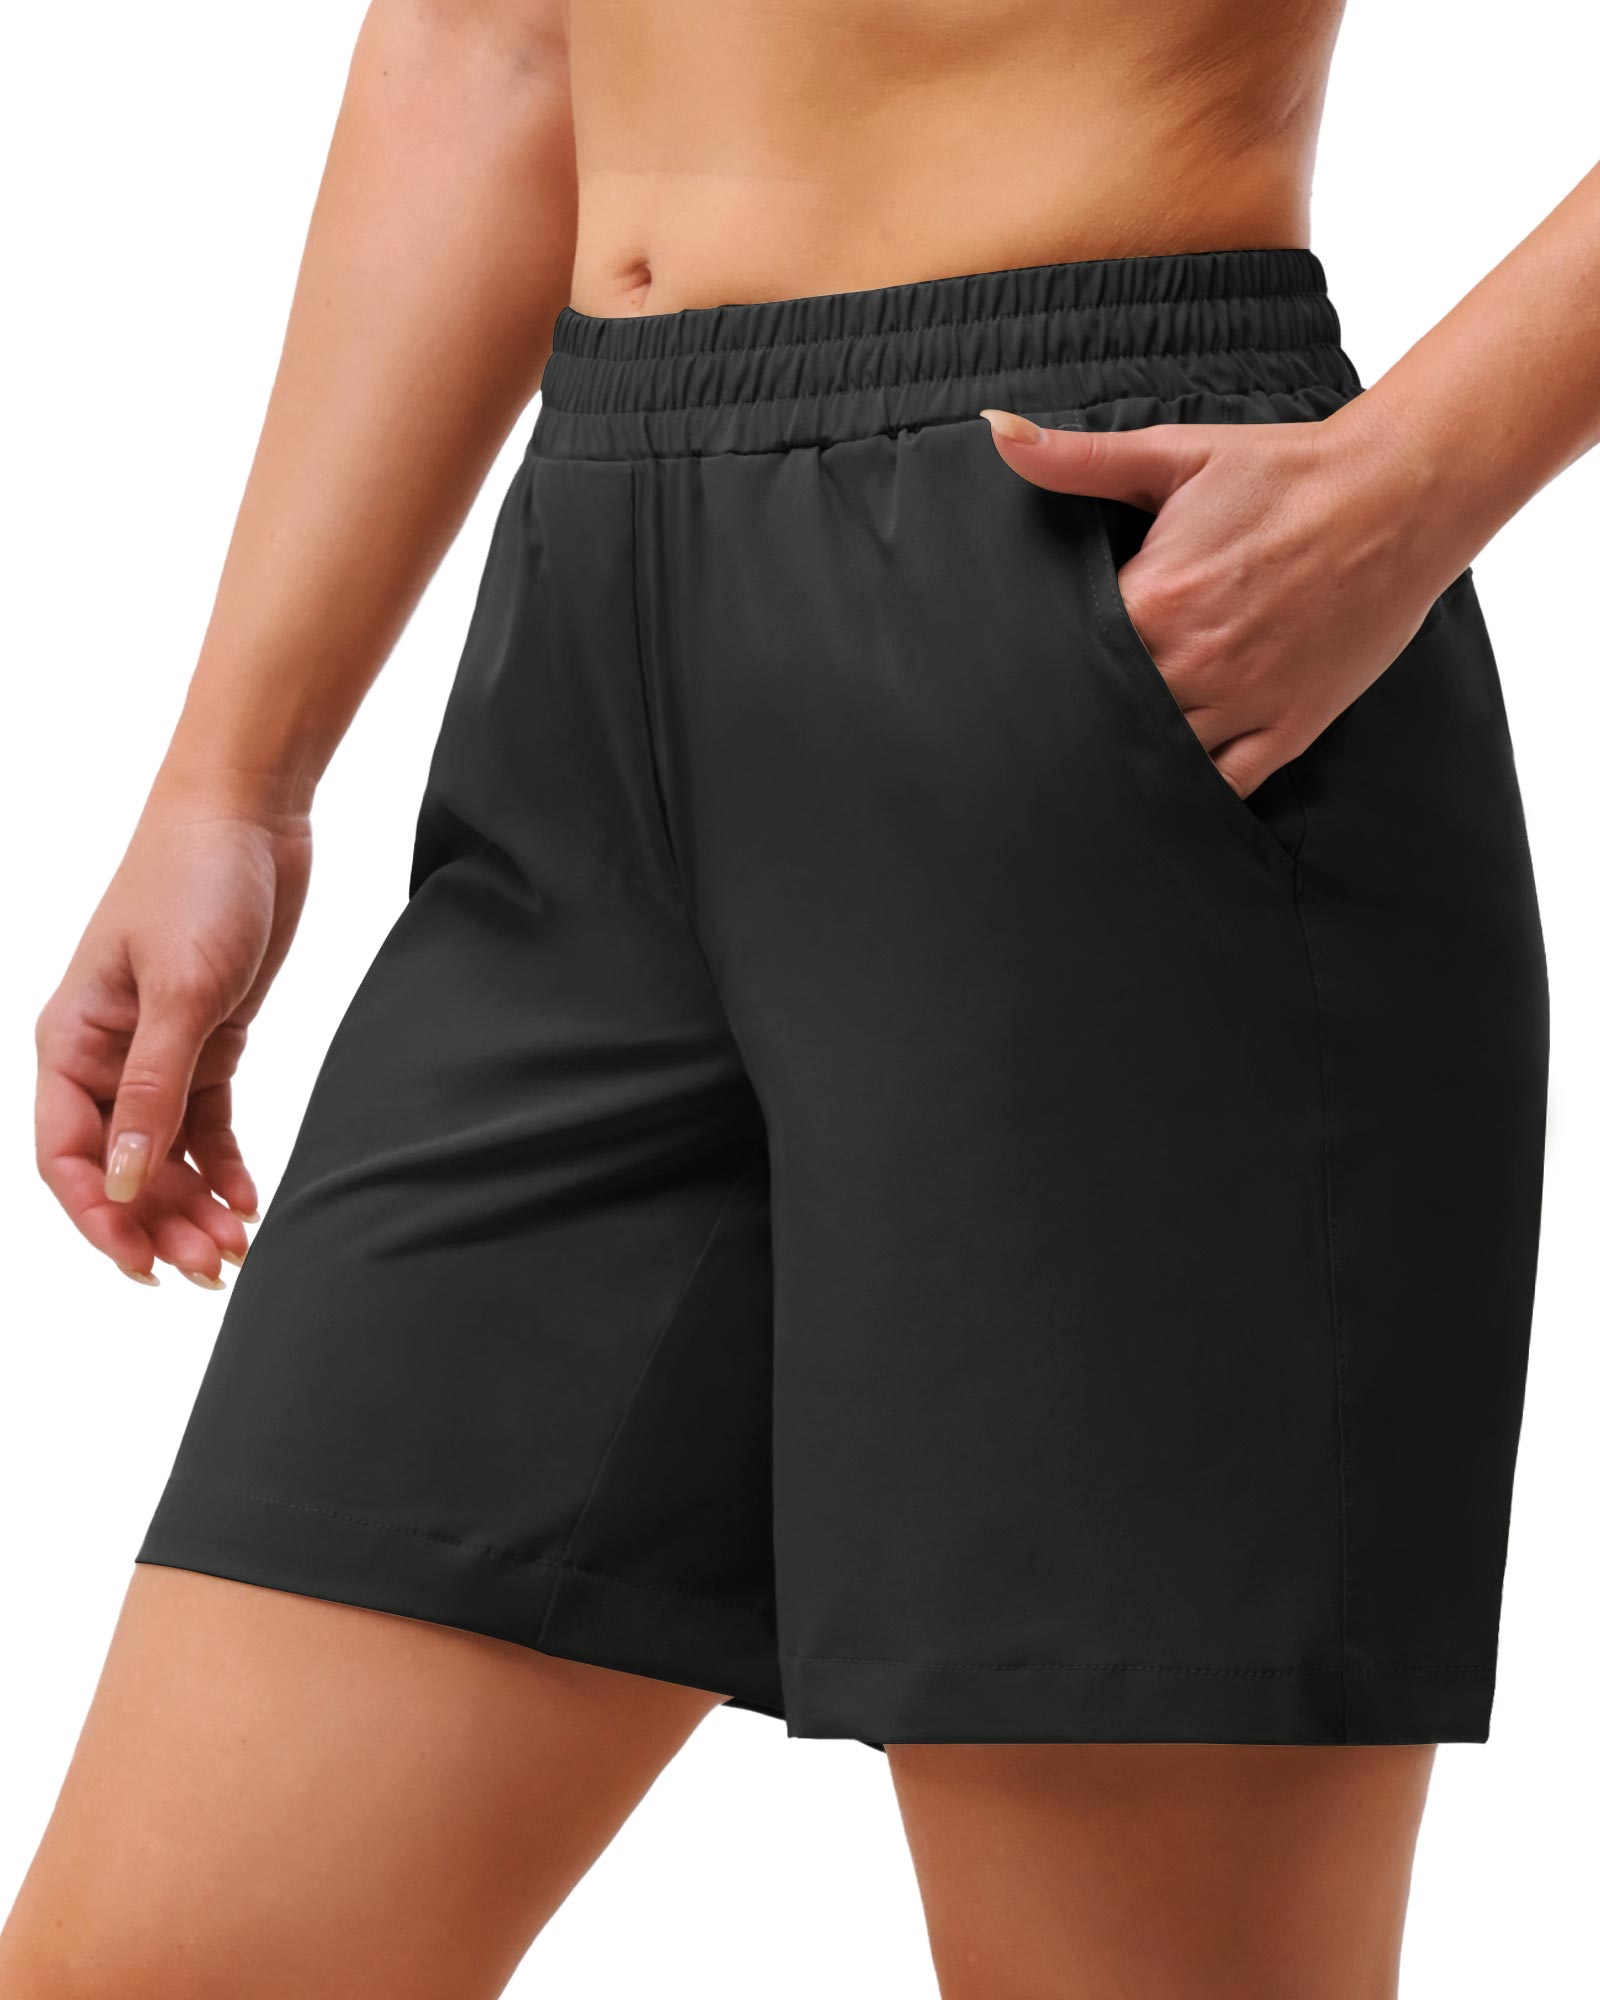 Women's UPF 50+ Button-Waist 17 Capri Golf Pants with 4 Pockets – 33,000ft